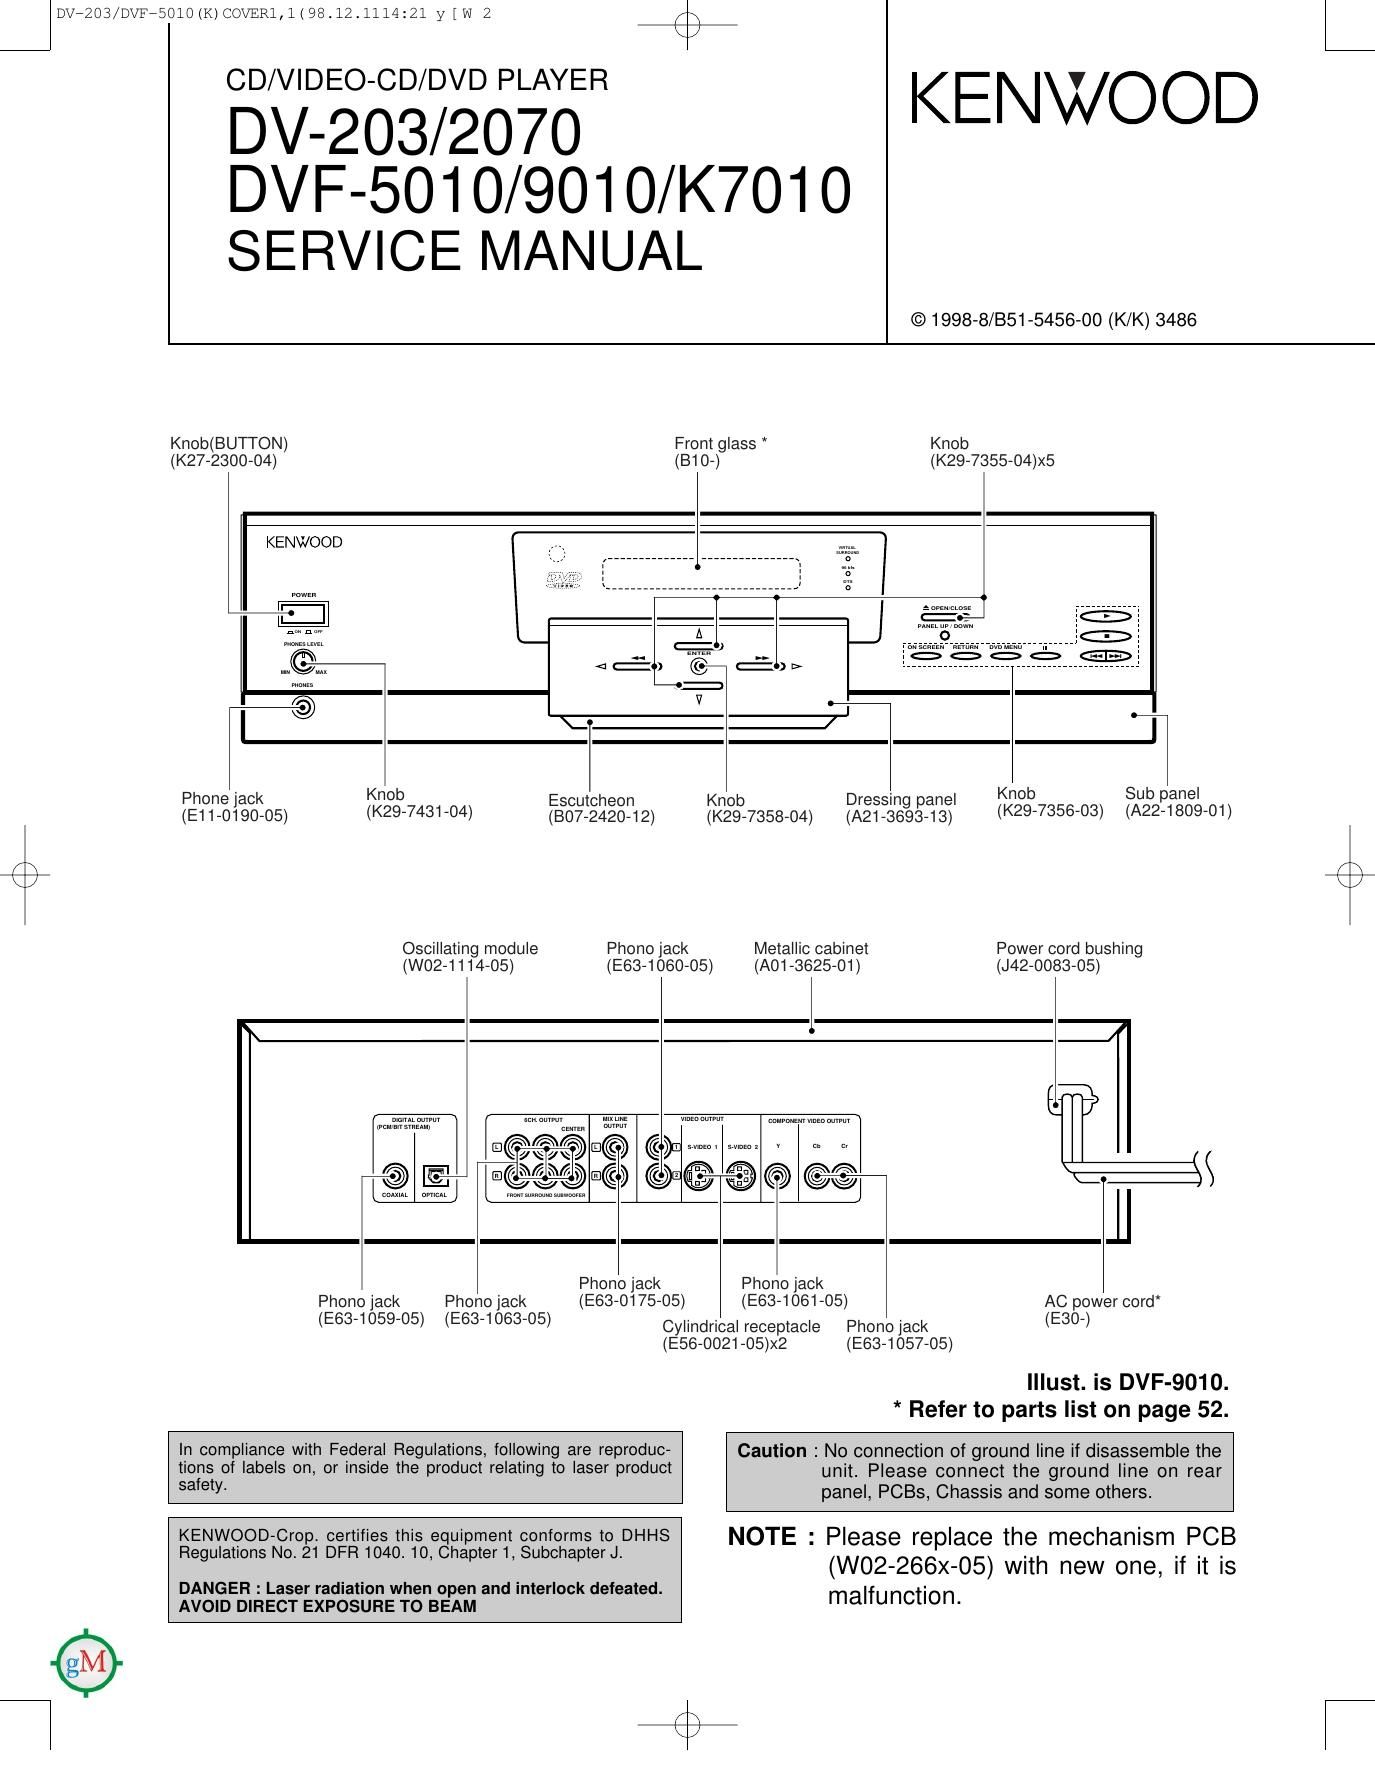 Kenwood DVF 9010 Service Manual